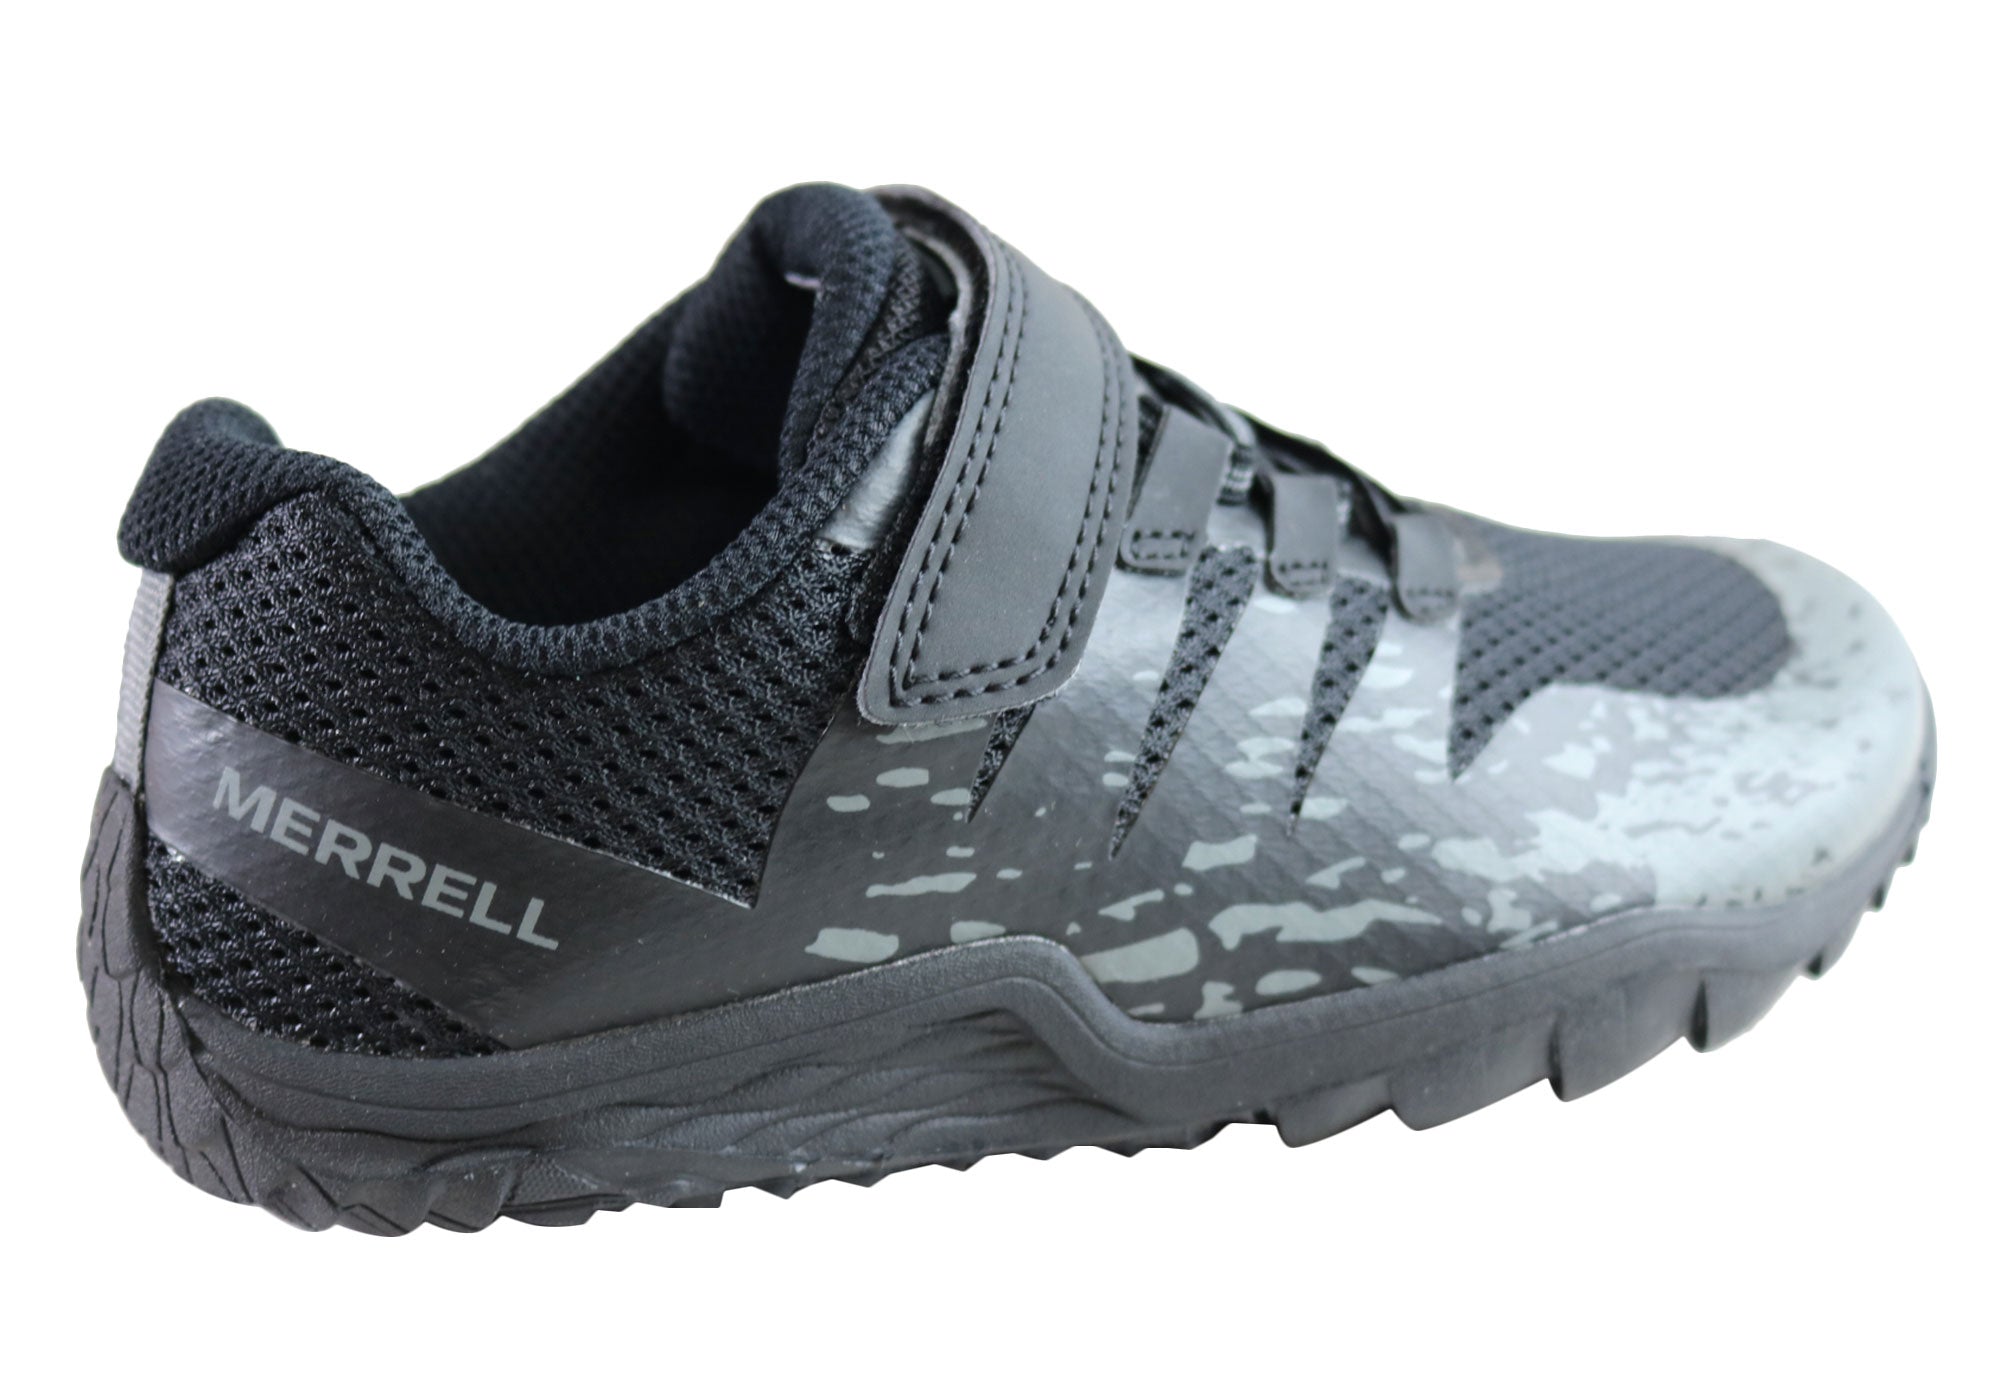 merrell slip on tennis shoes